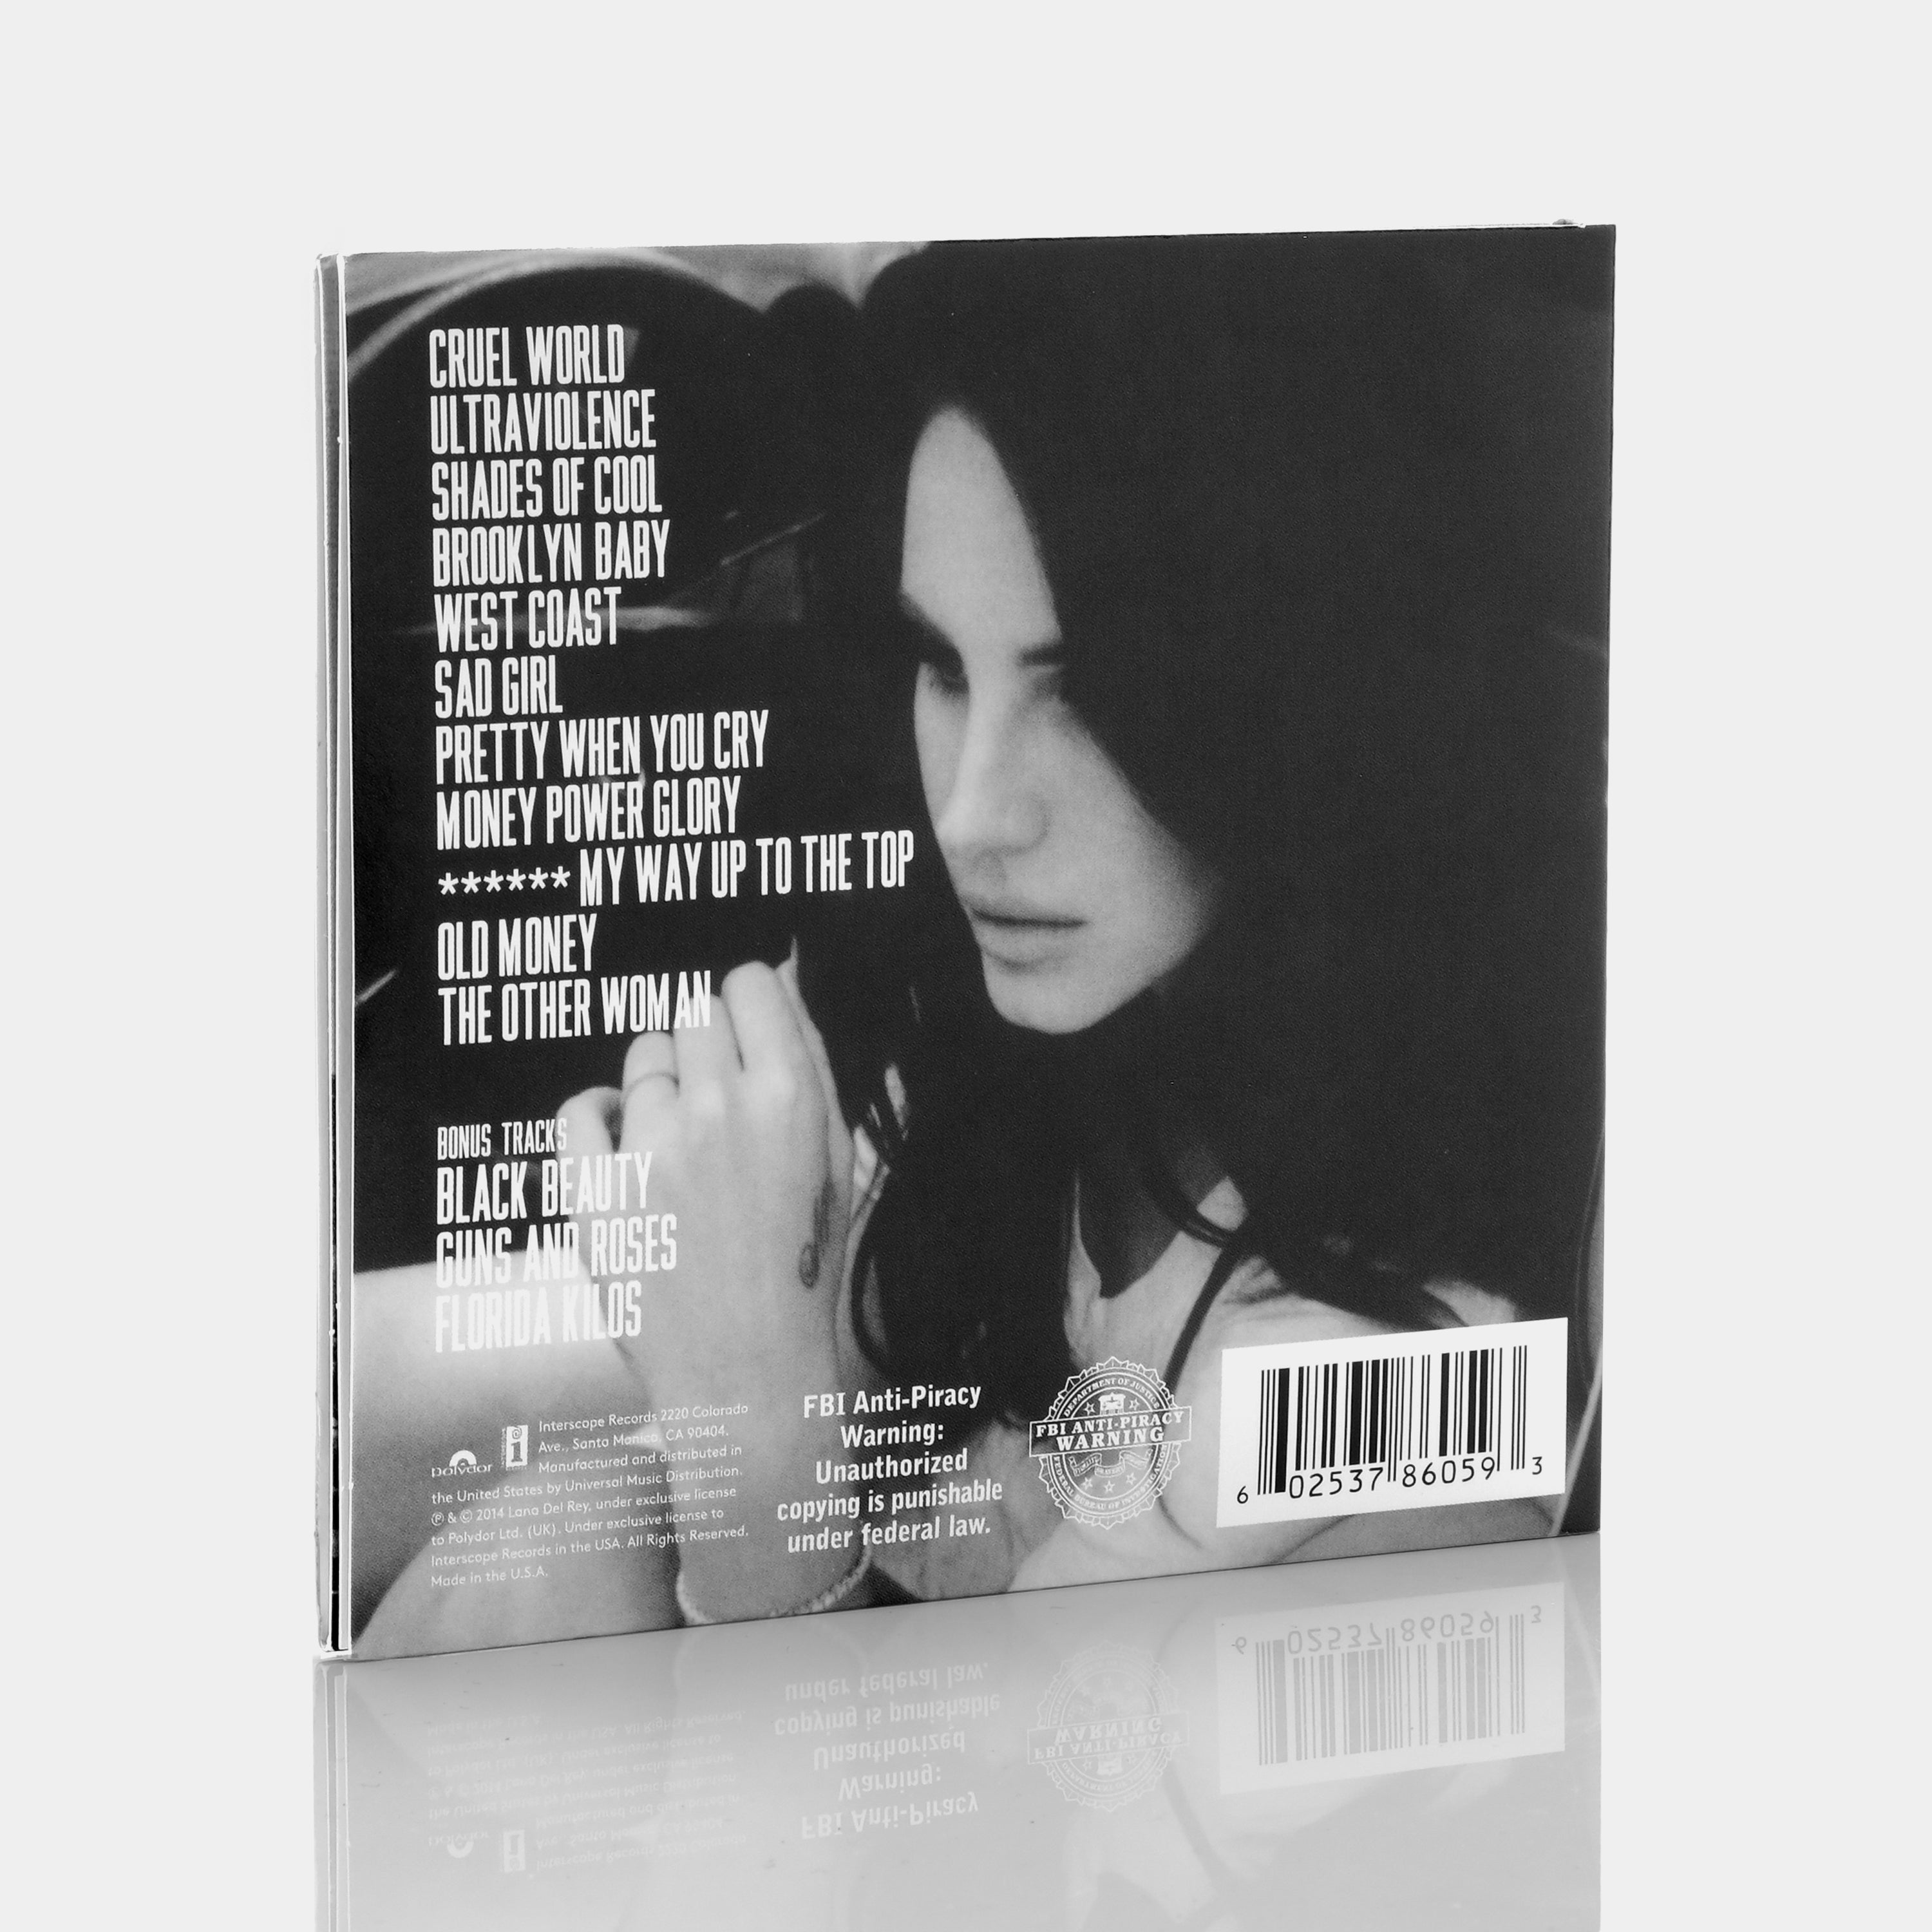 Lana Del Rey – UMUSIC Shop Canada